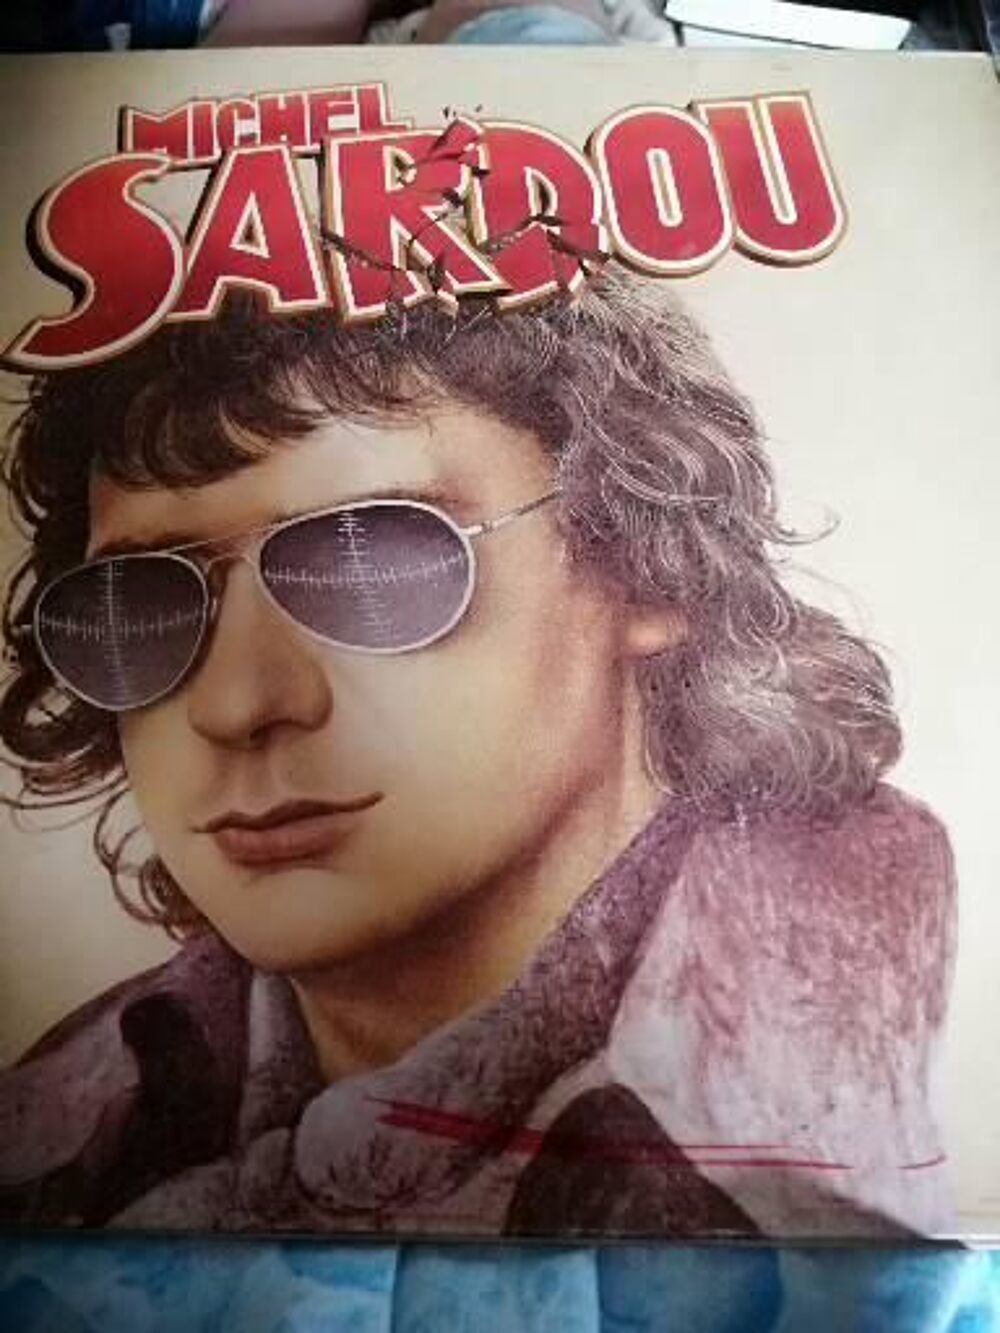 Vinyle 33 tours de Michel Sardou CD et vinyles